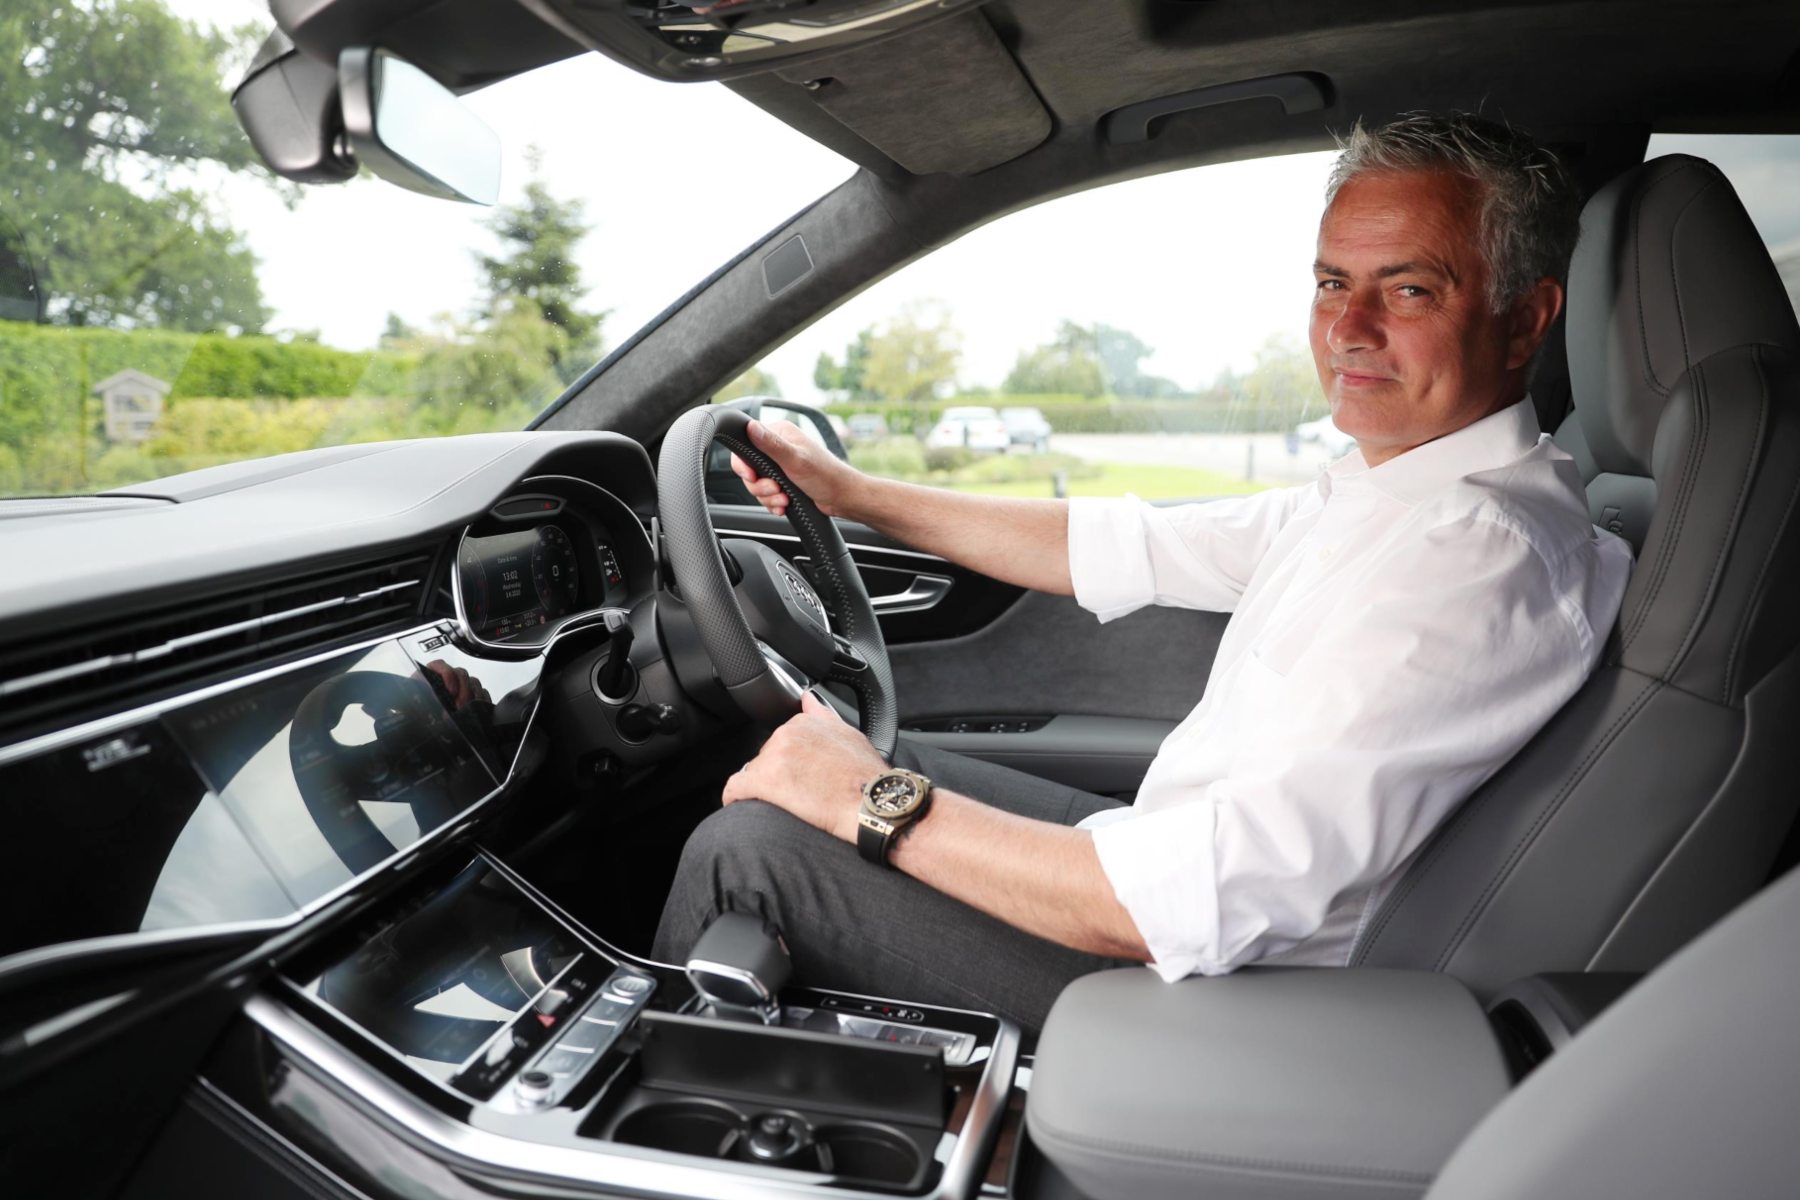 José Mourinho, Head Coach of Tottenham Hotspur Football Club and new Audi Ambassador, with his Audi Q8